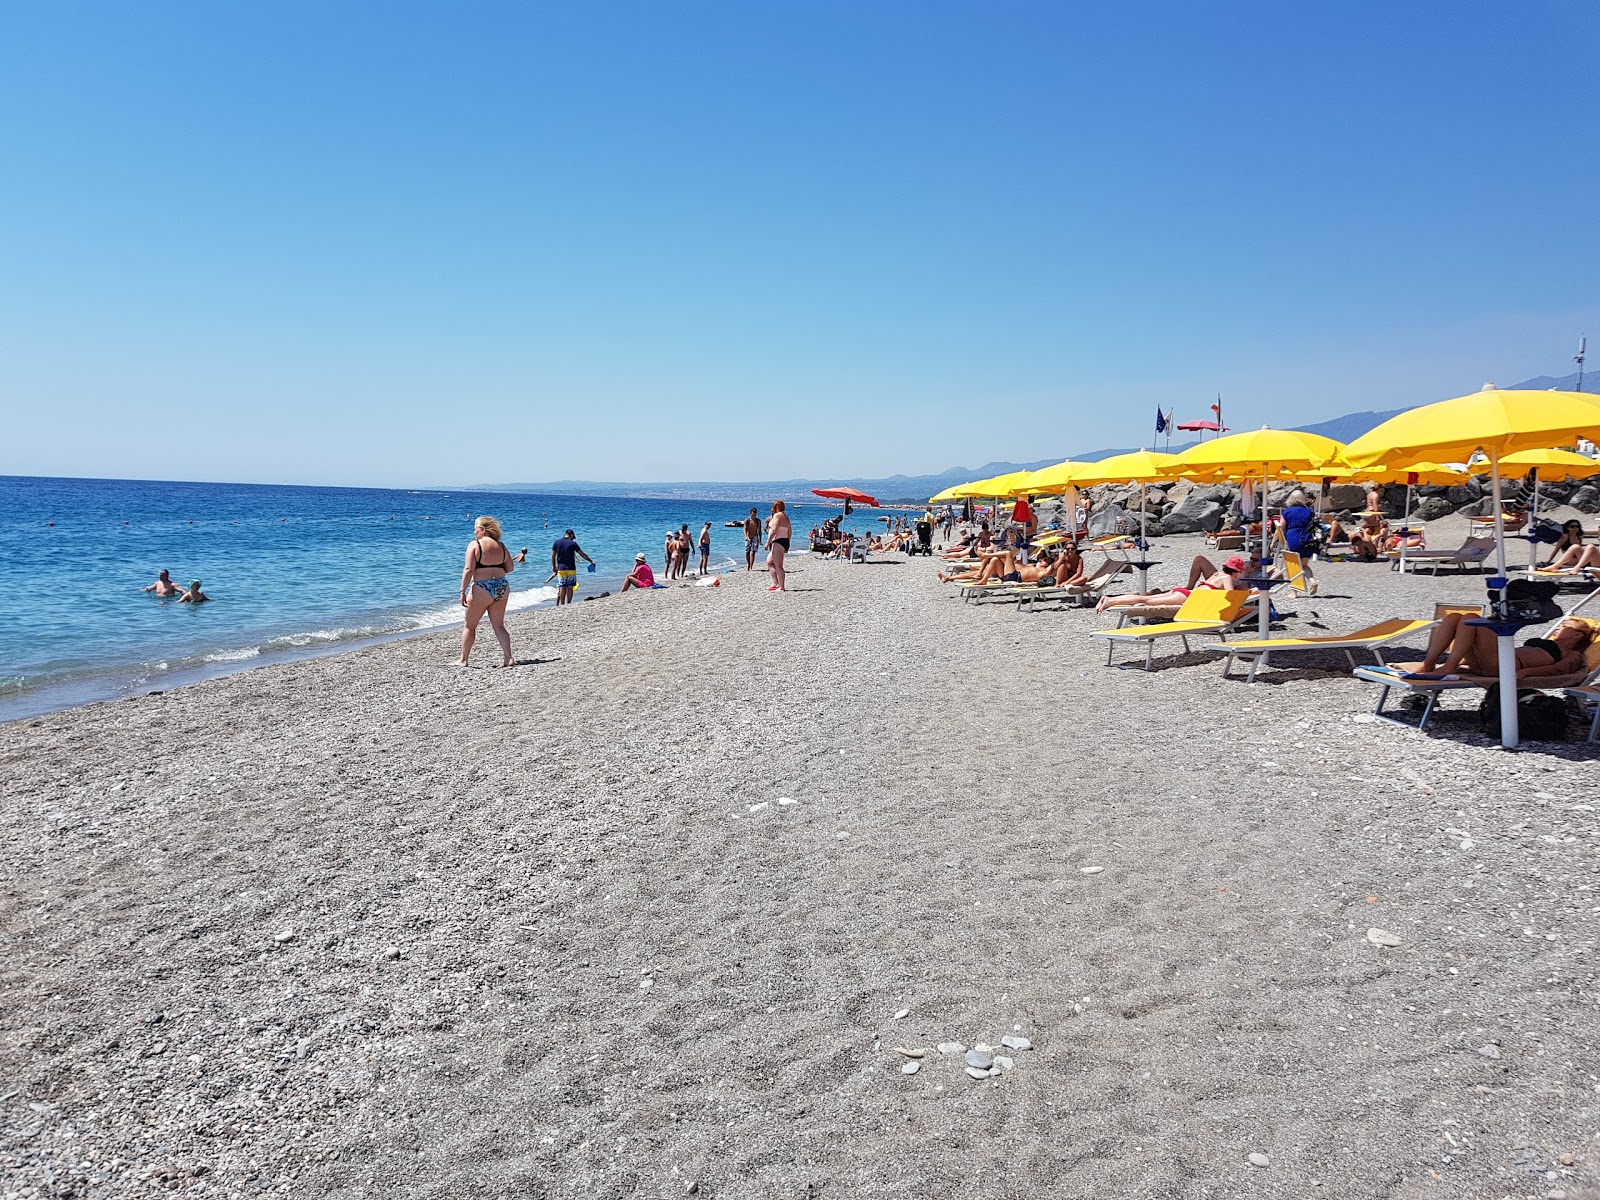 Recanati beach II'in fotoğrafı - rahatlamayı sevenler arasında popüler bir yer